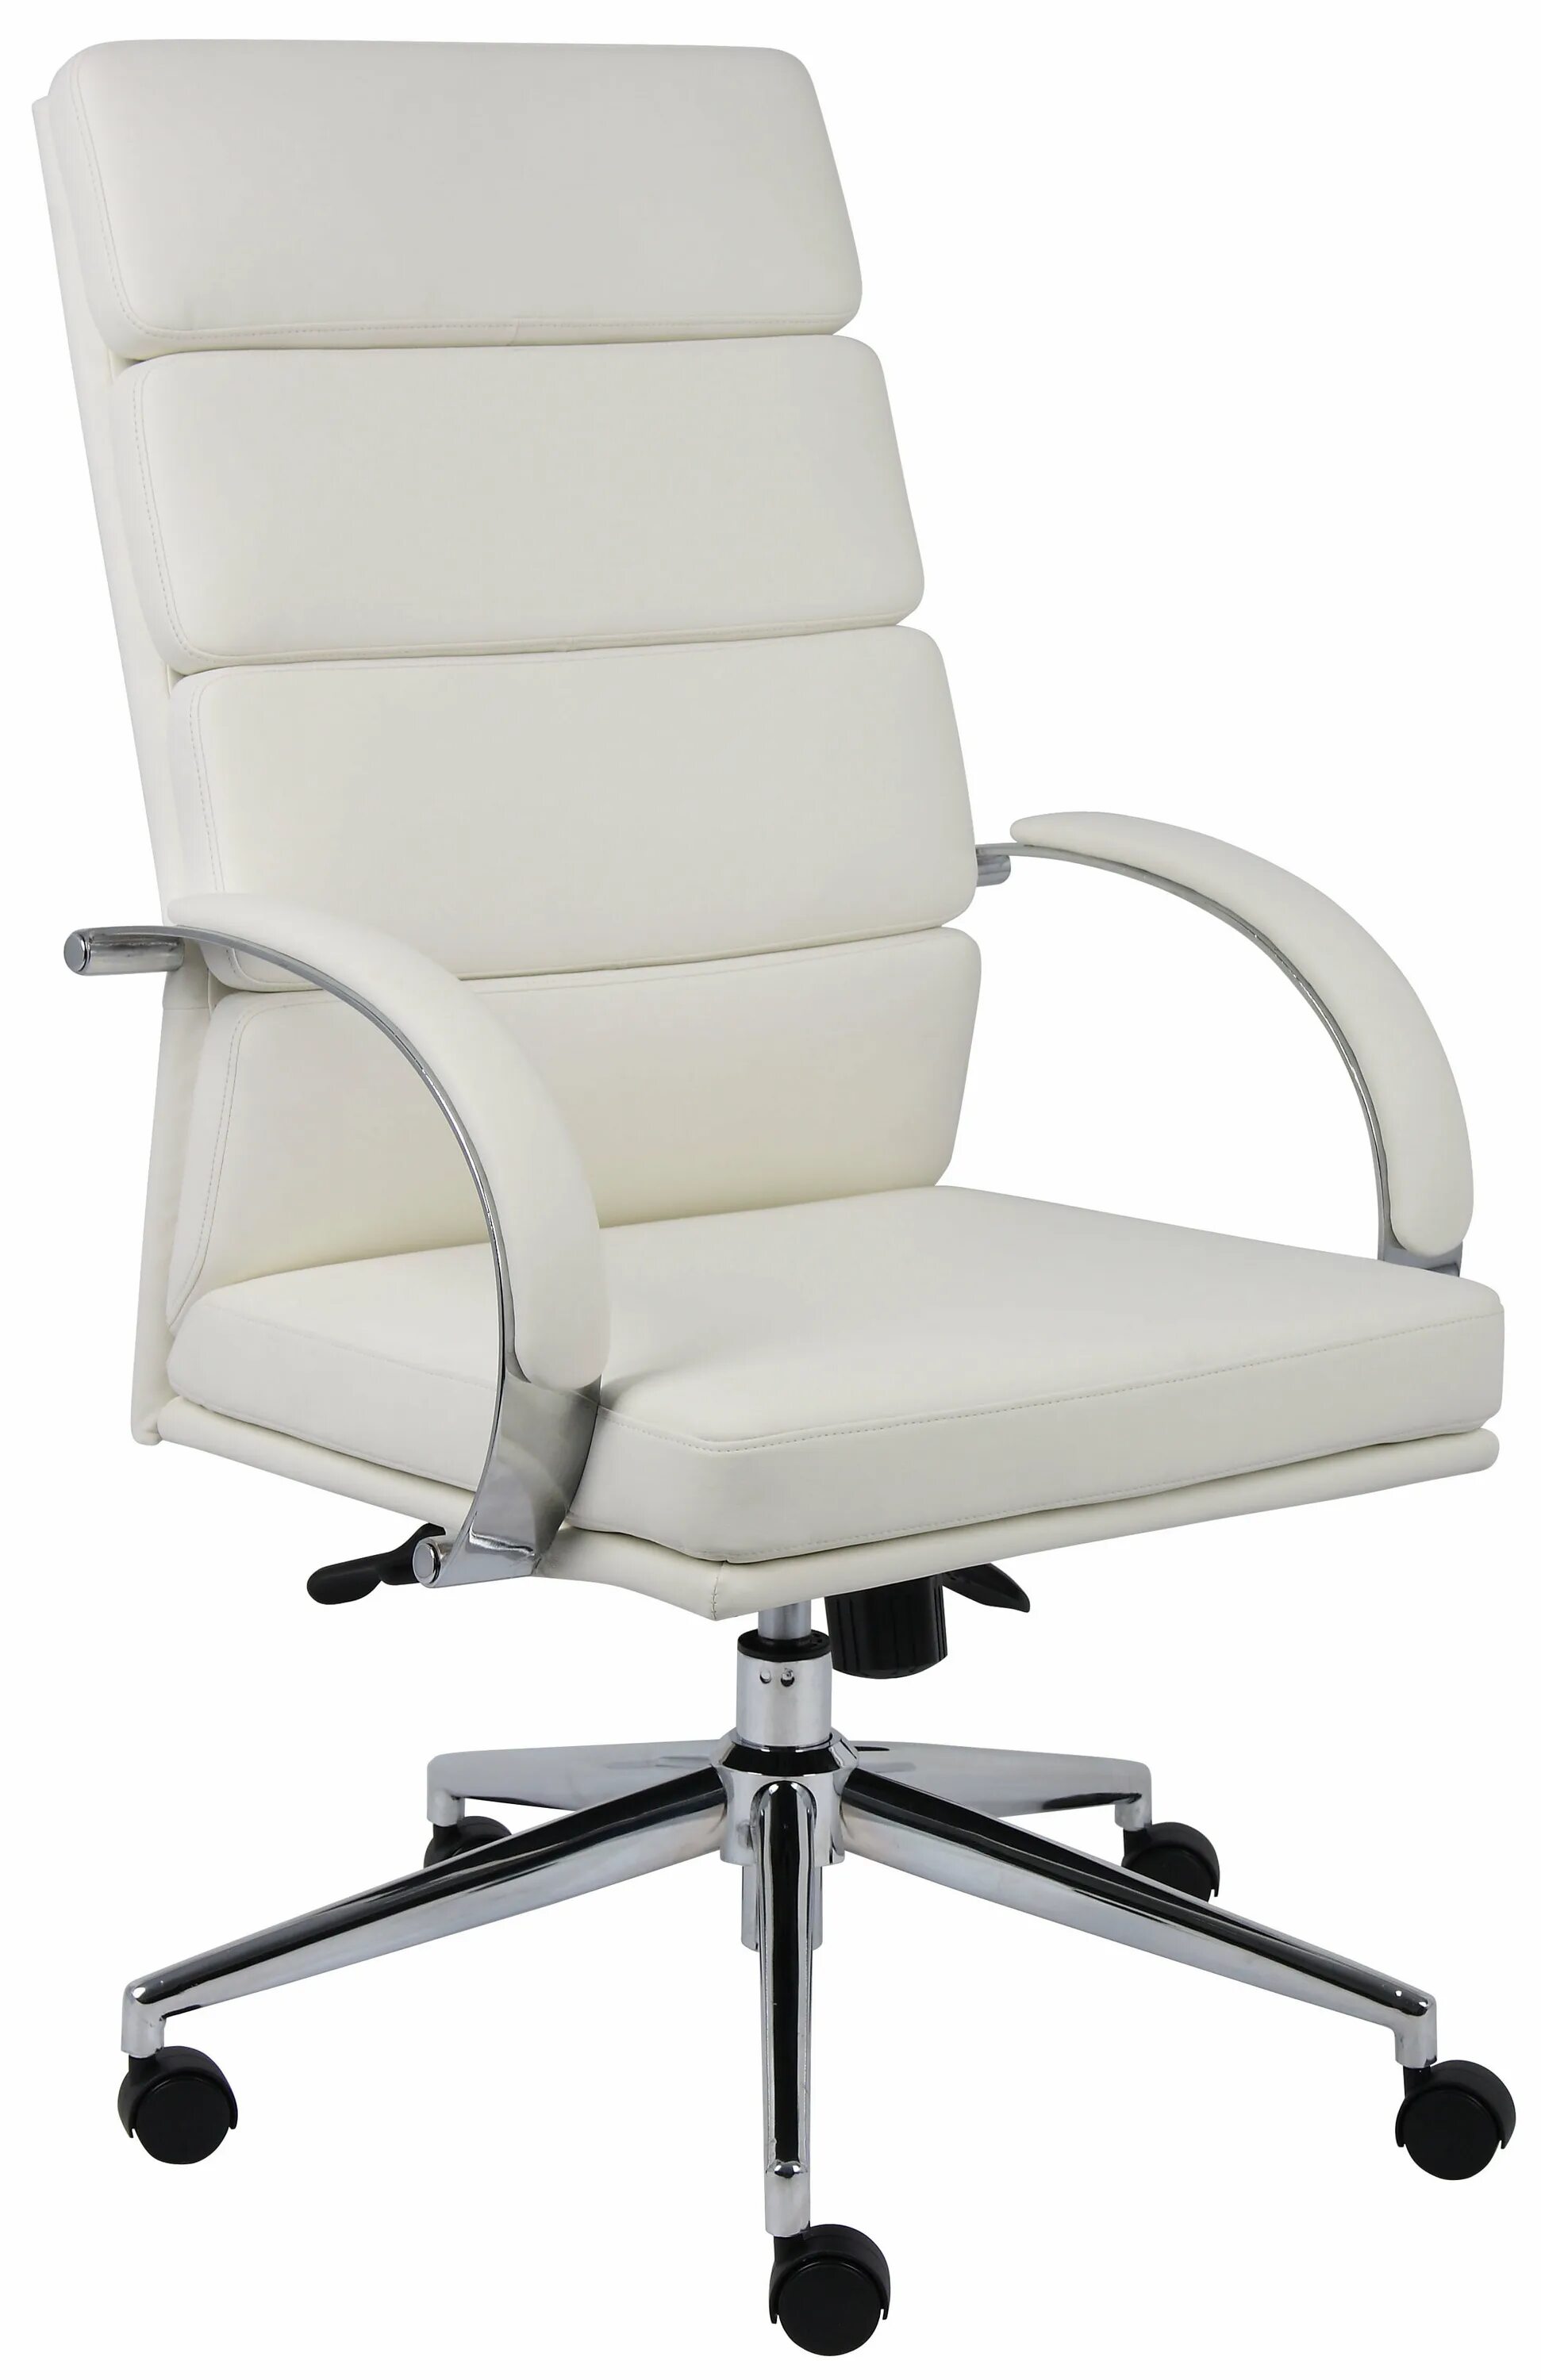 Кресло офисное/Office Chair without Wheels. Кресло Boss 2. Кресло рабочее Boss BT-9767h (кожа). Офисное кресло Дэфо белое.